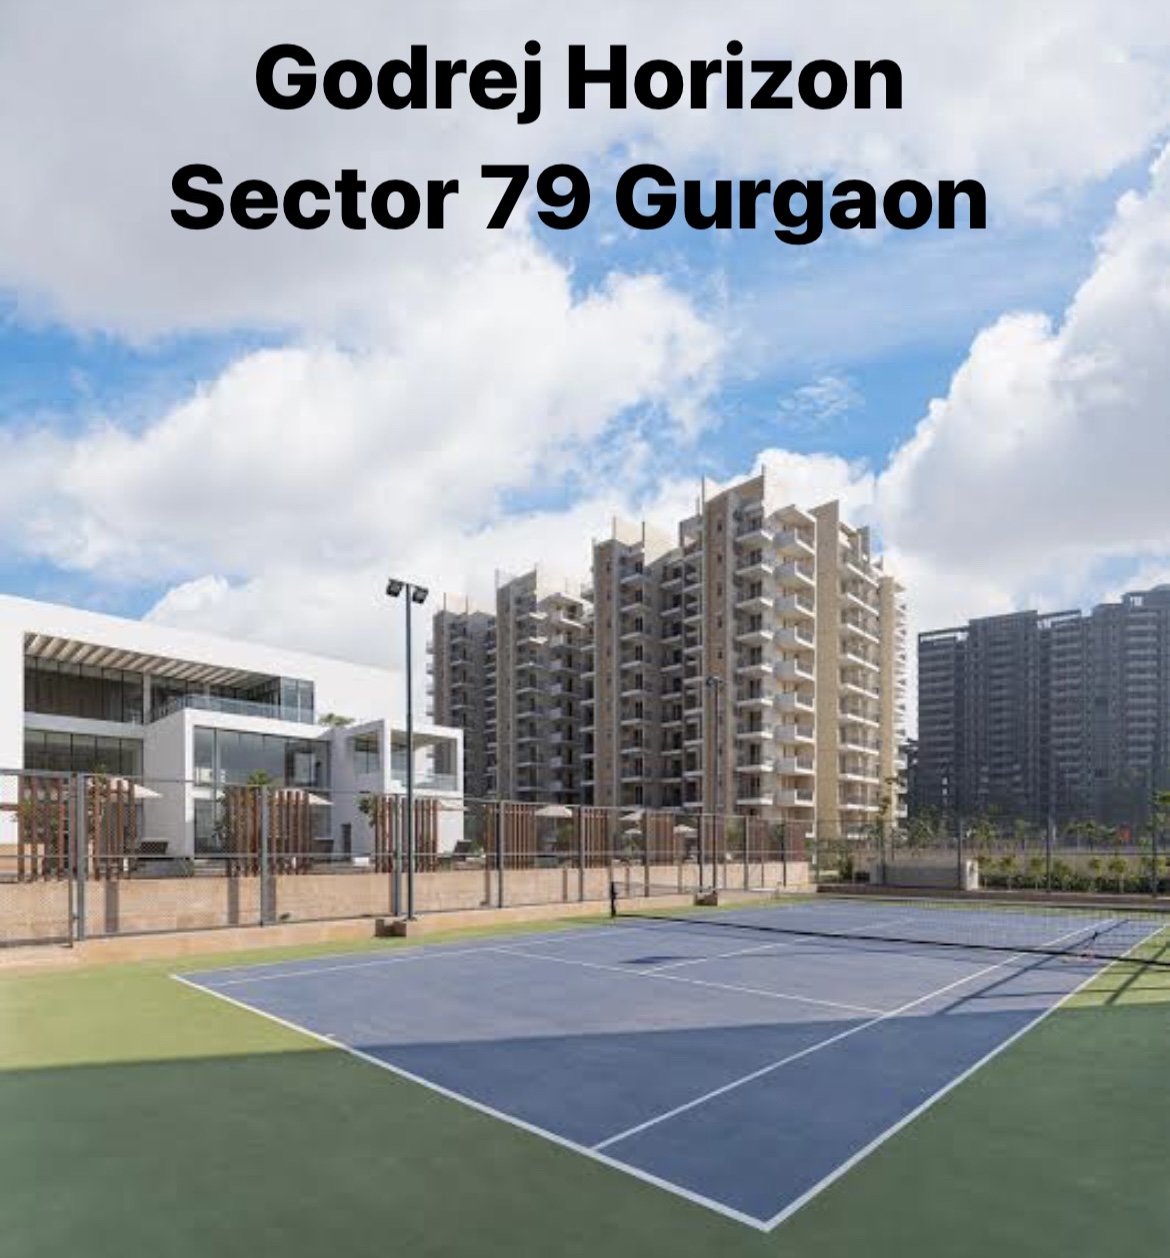 Godrej Horizon Sector 79 Gurgaon 